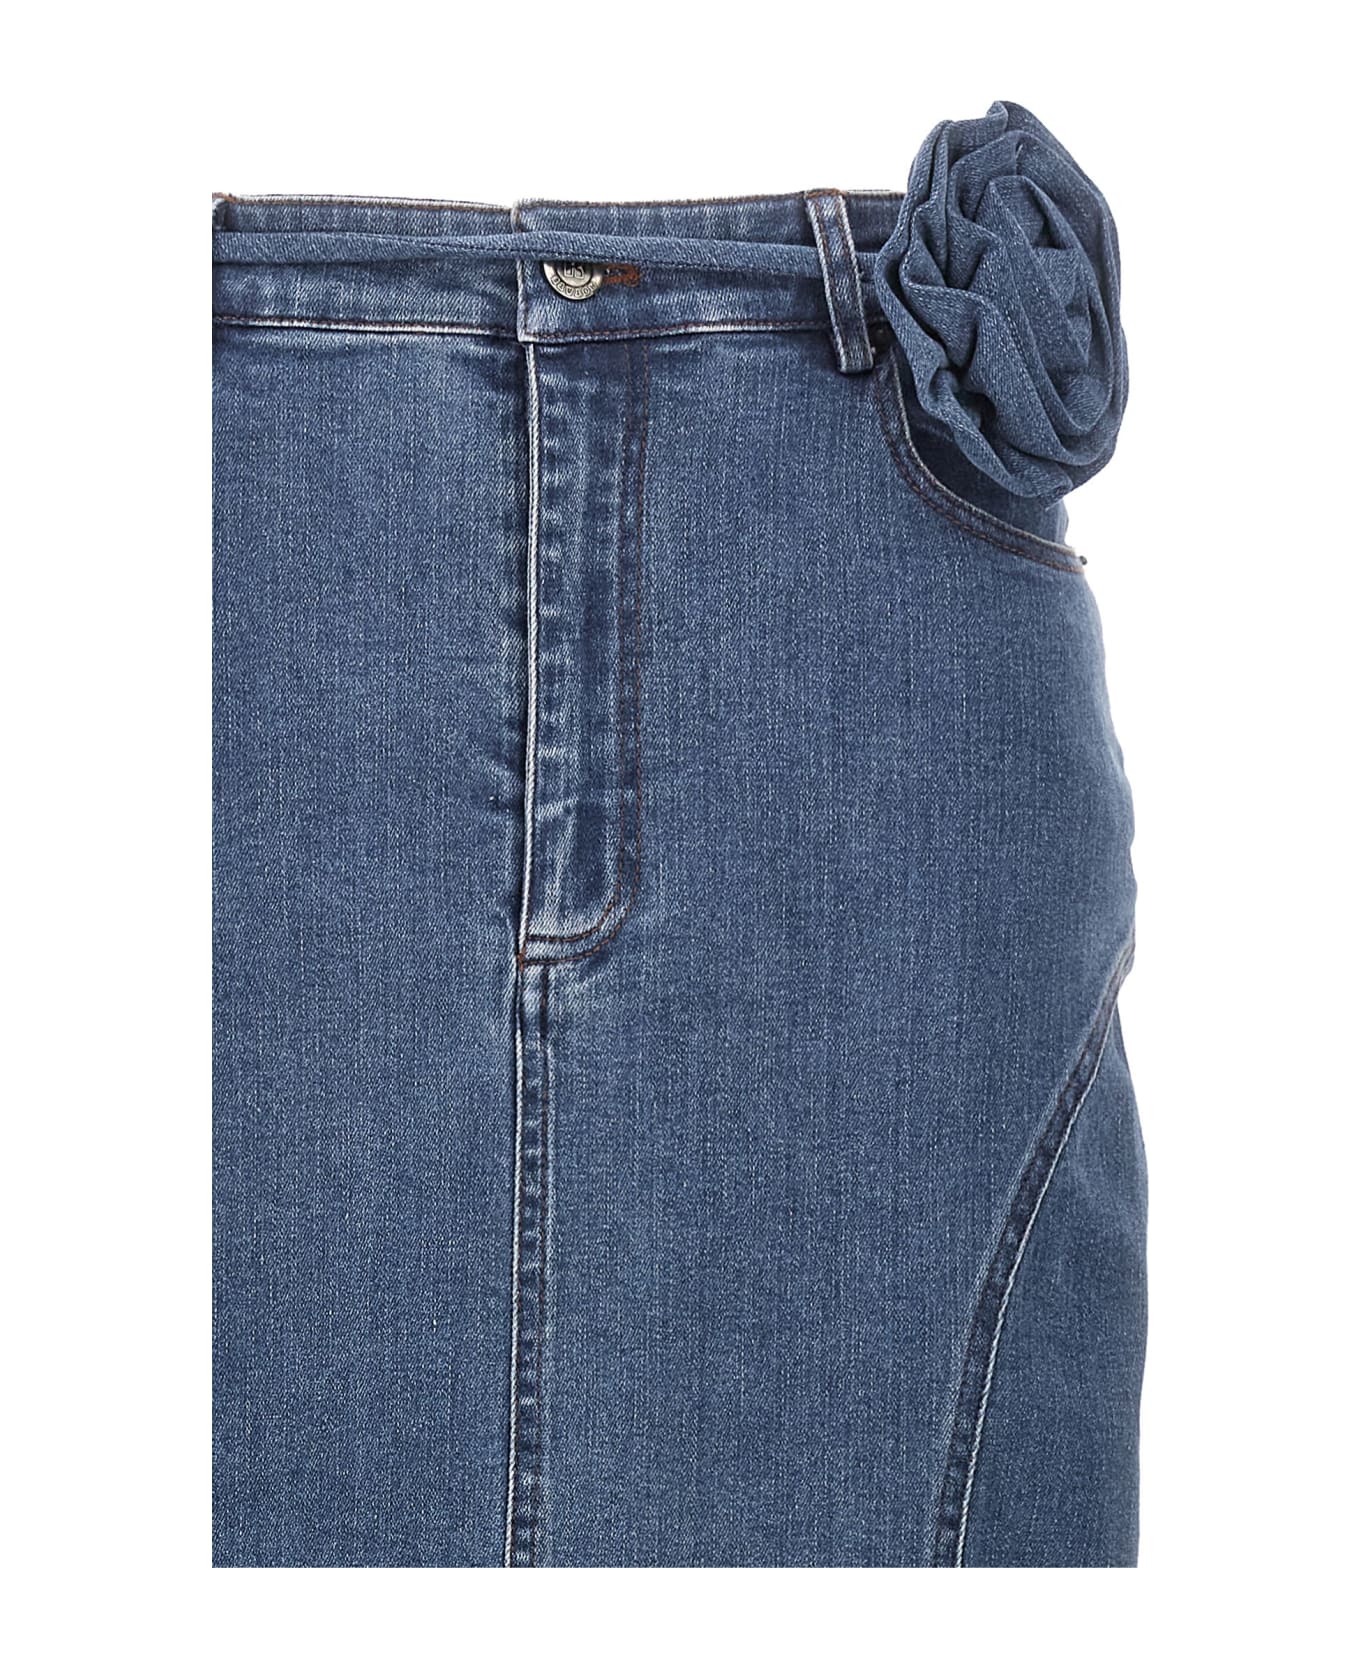 Rotate by Birger Christensen Long Skirt With Flowered Belt Denim - Blue